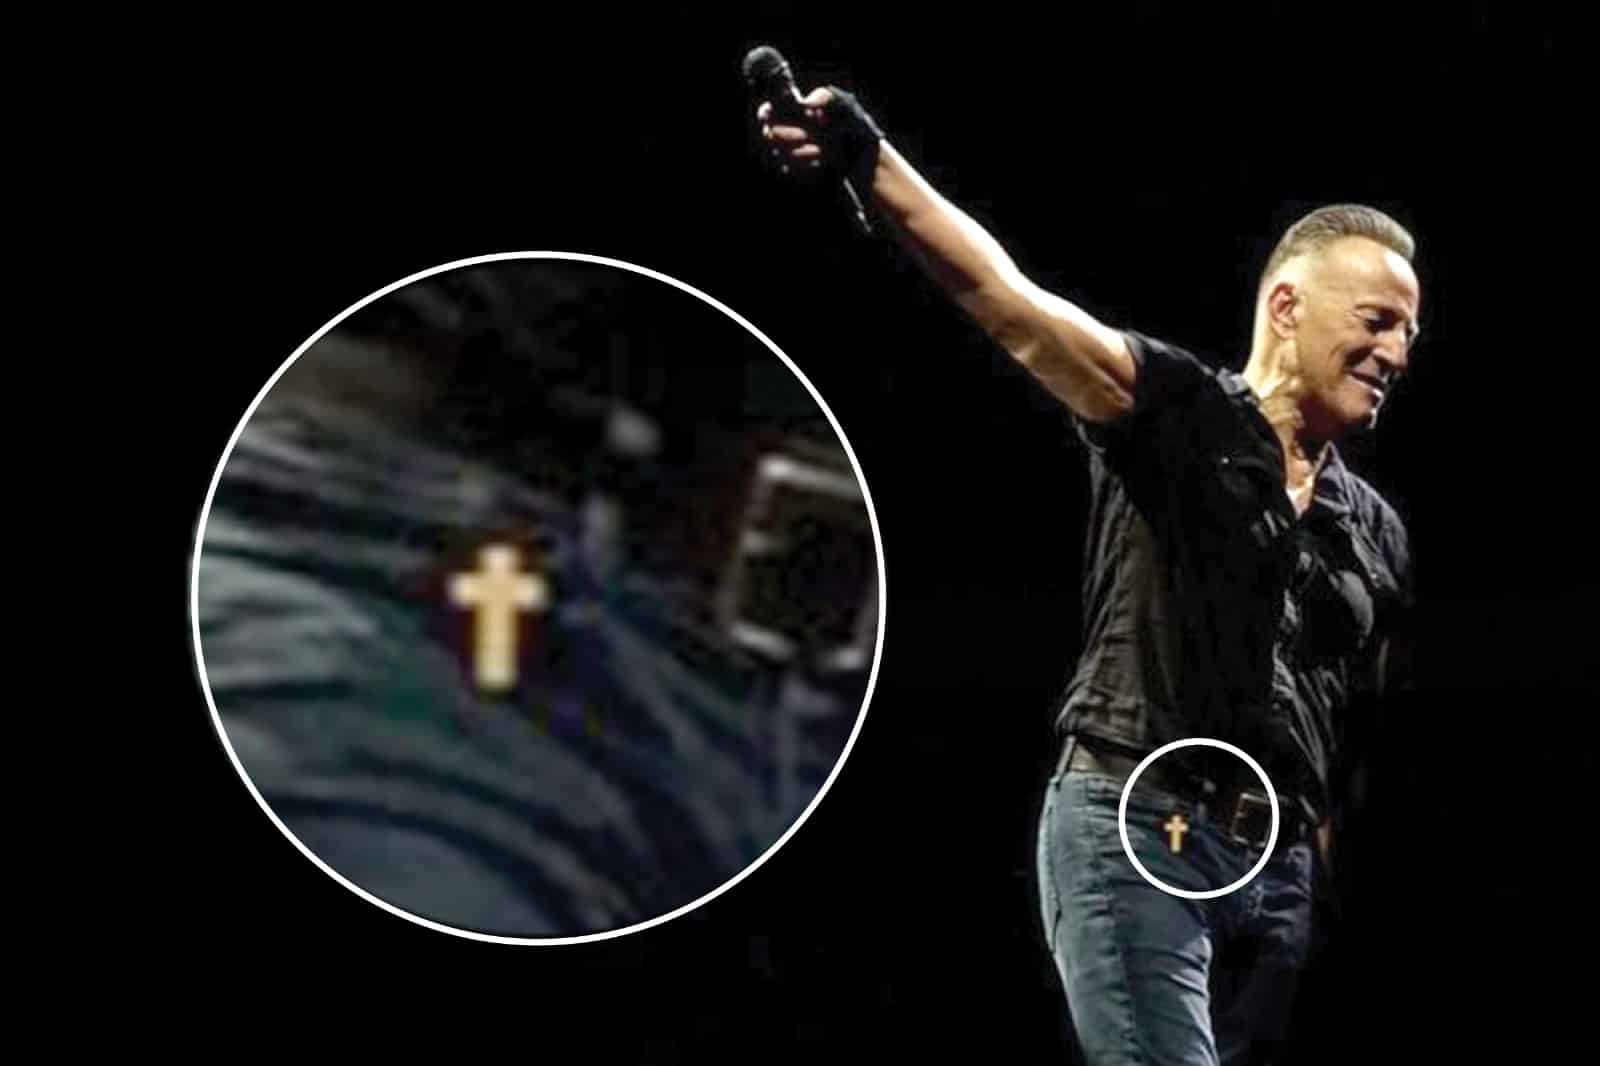 Lo que muy pocos vieron en el concierto de Bruce Springsteen en Barcelona